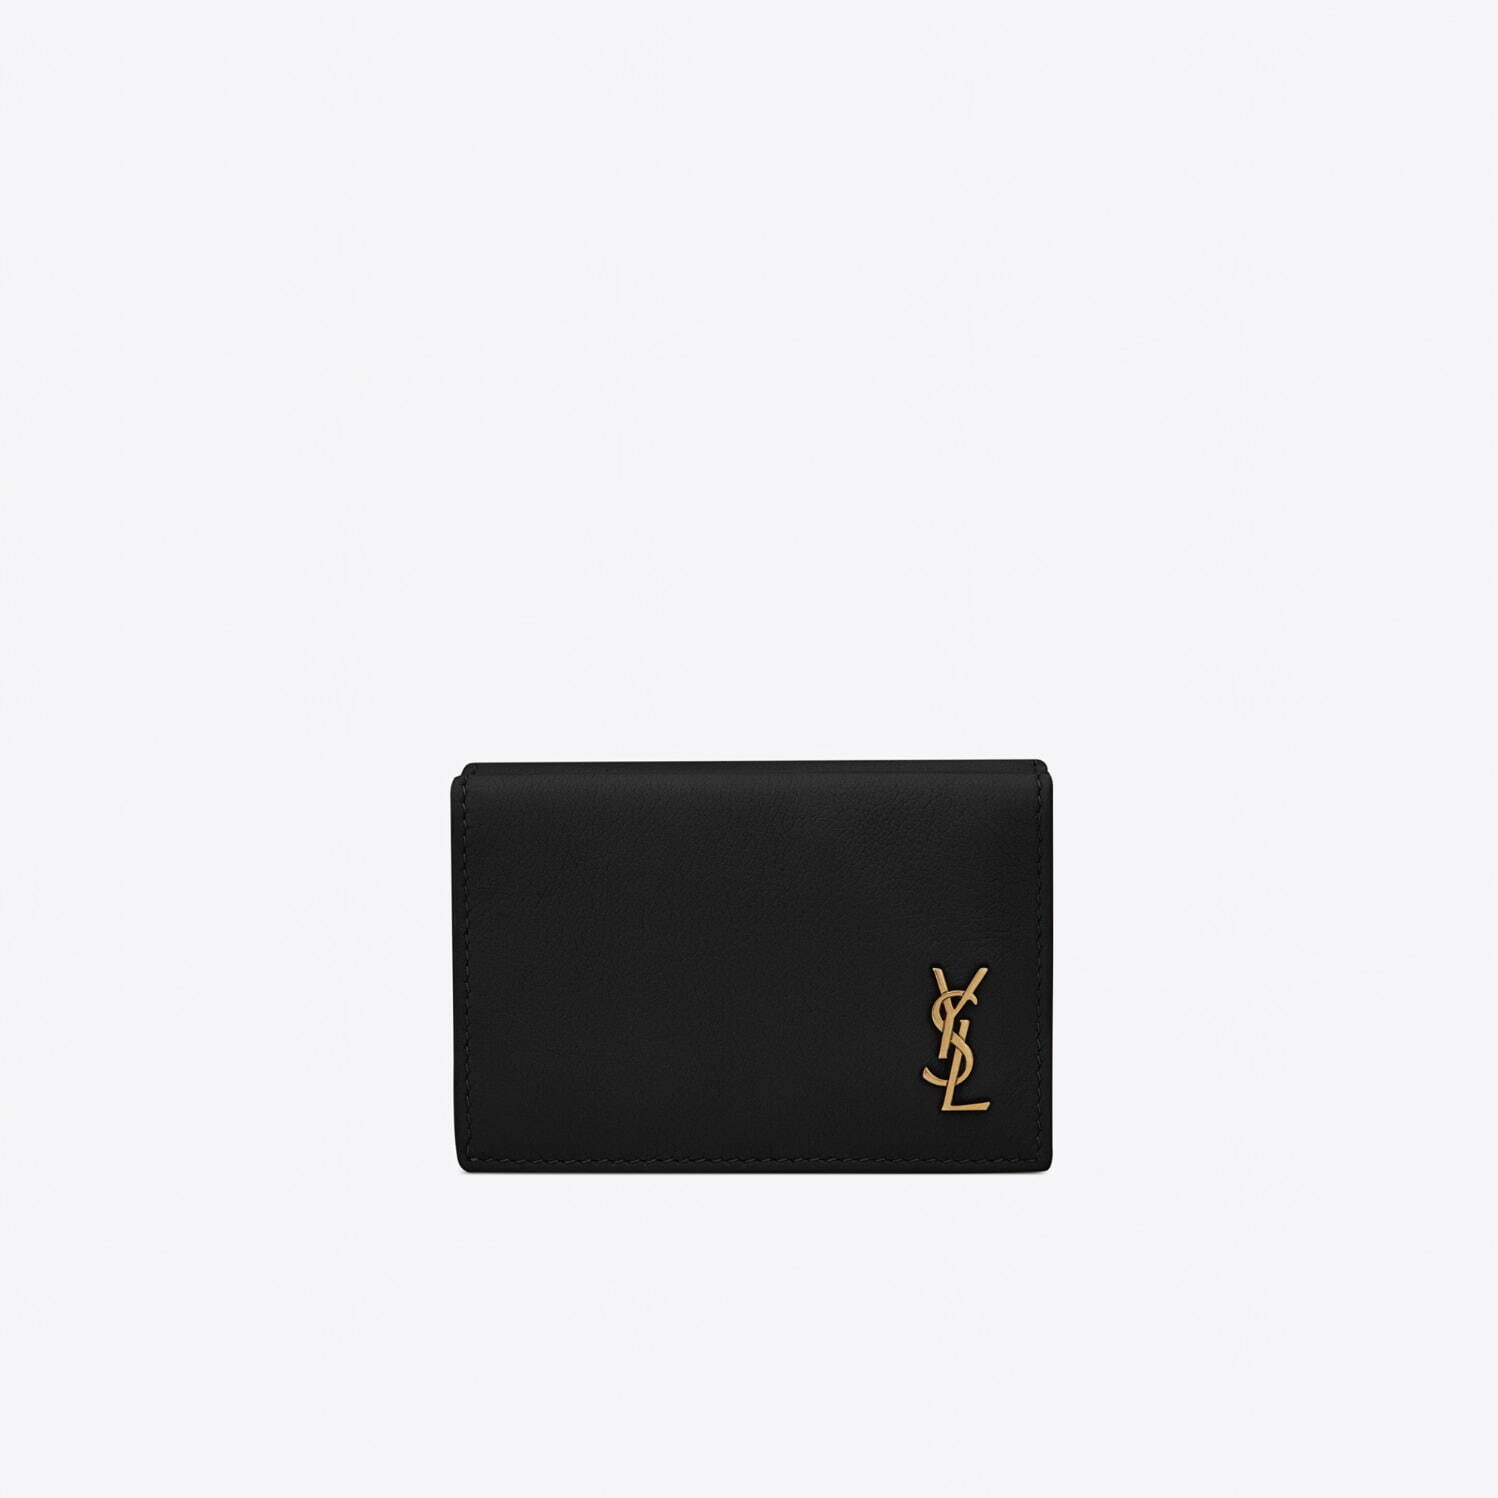 〈サンローラン〉ロゴを配したブラックレザーの三つ折りミニ財布